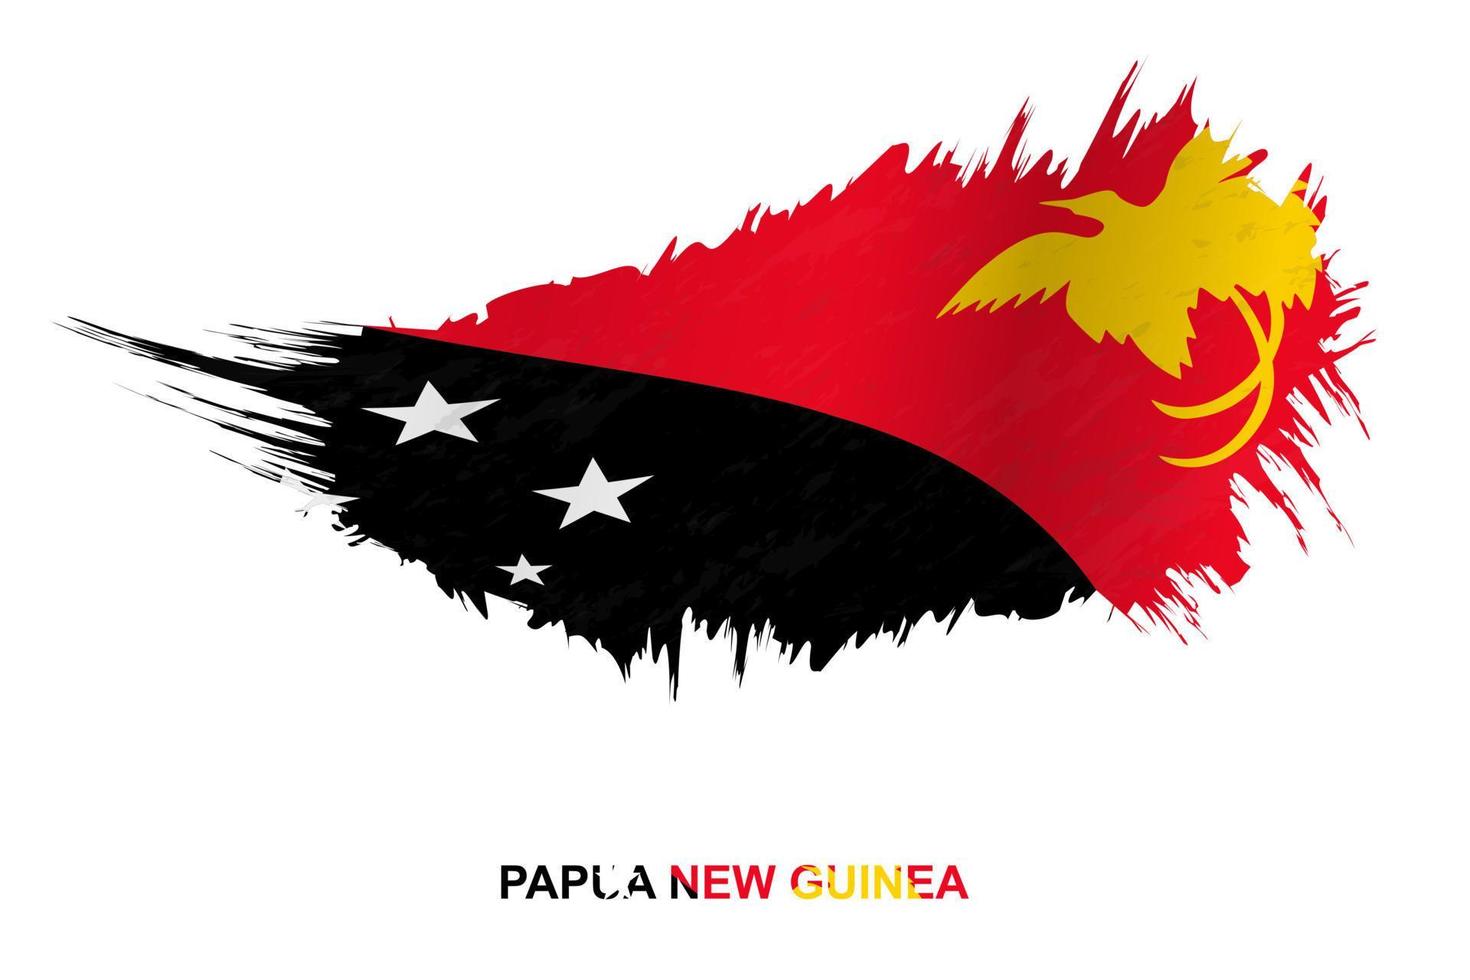 bandeira da papua nova guiné em estilo grunge com efeito acenando. vetor